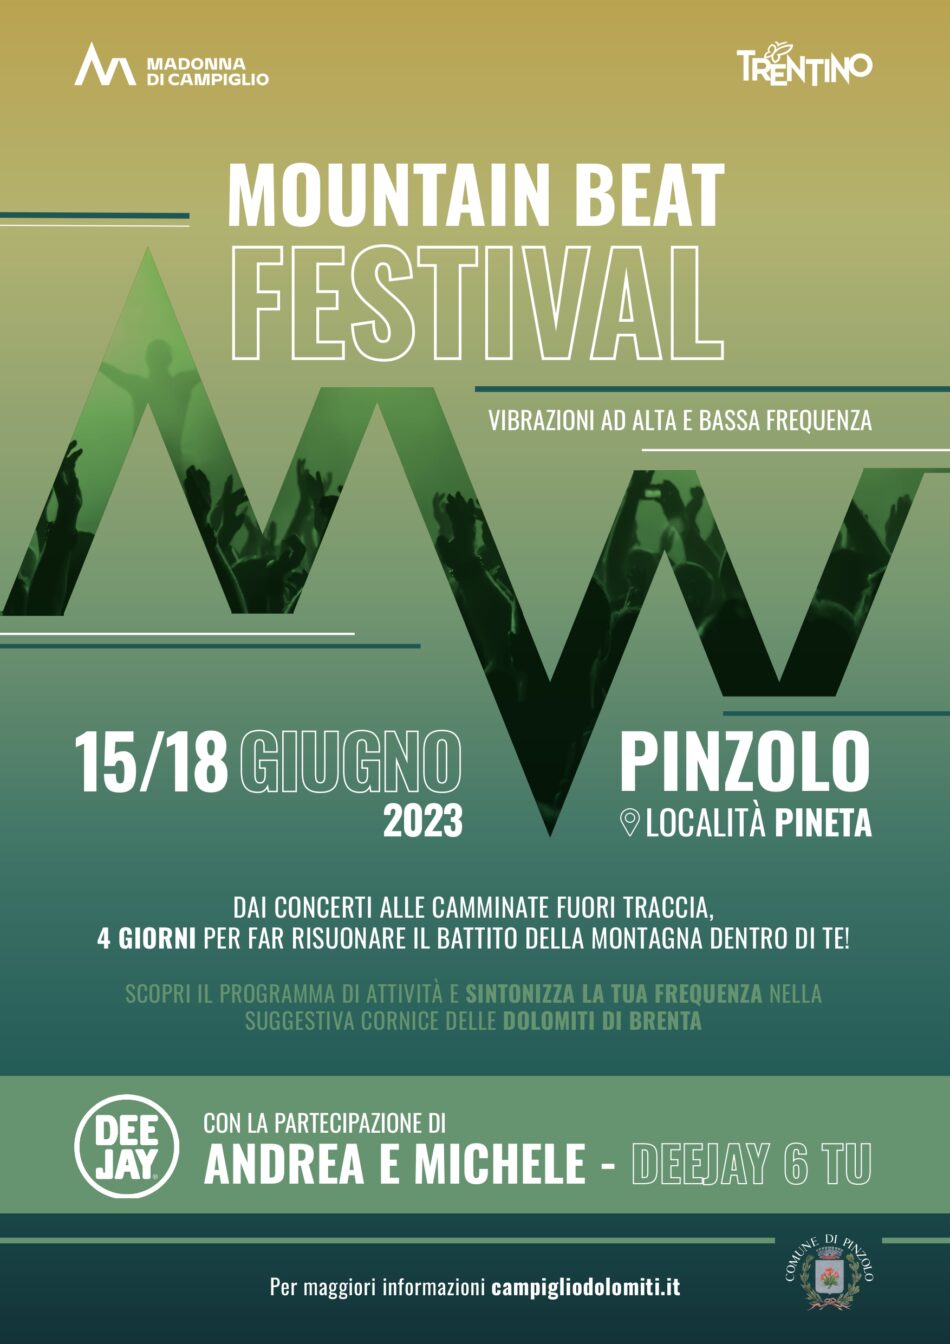 Dal 15 al 18 giugno a Pinzolo avrà luogo il Mountain Beat Festival